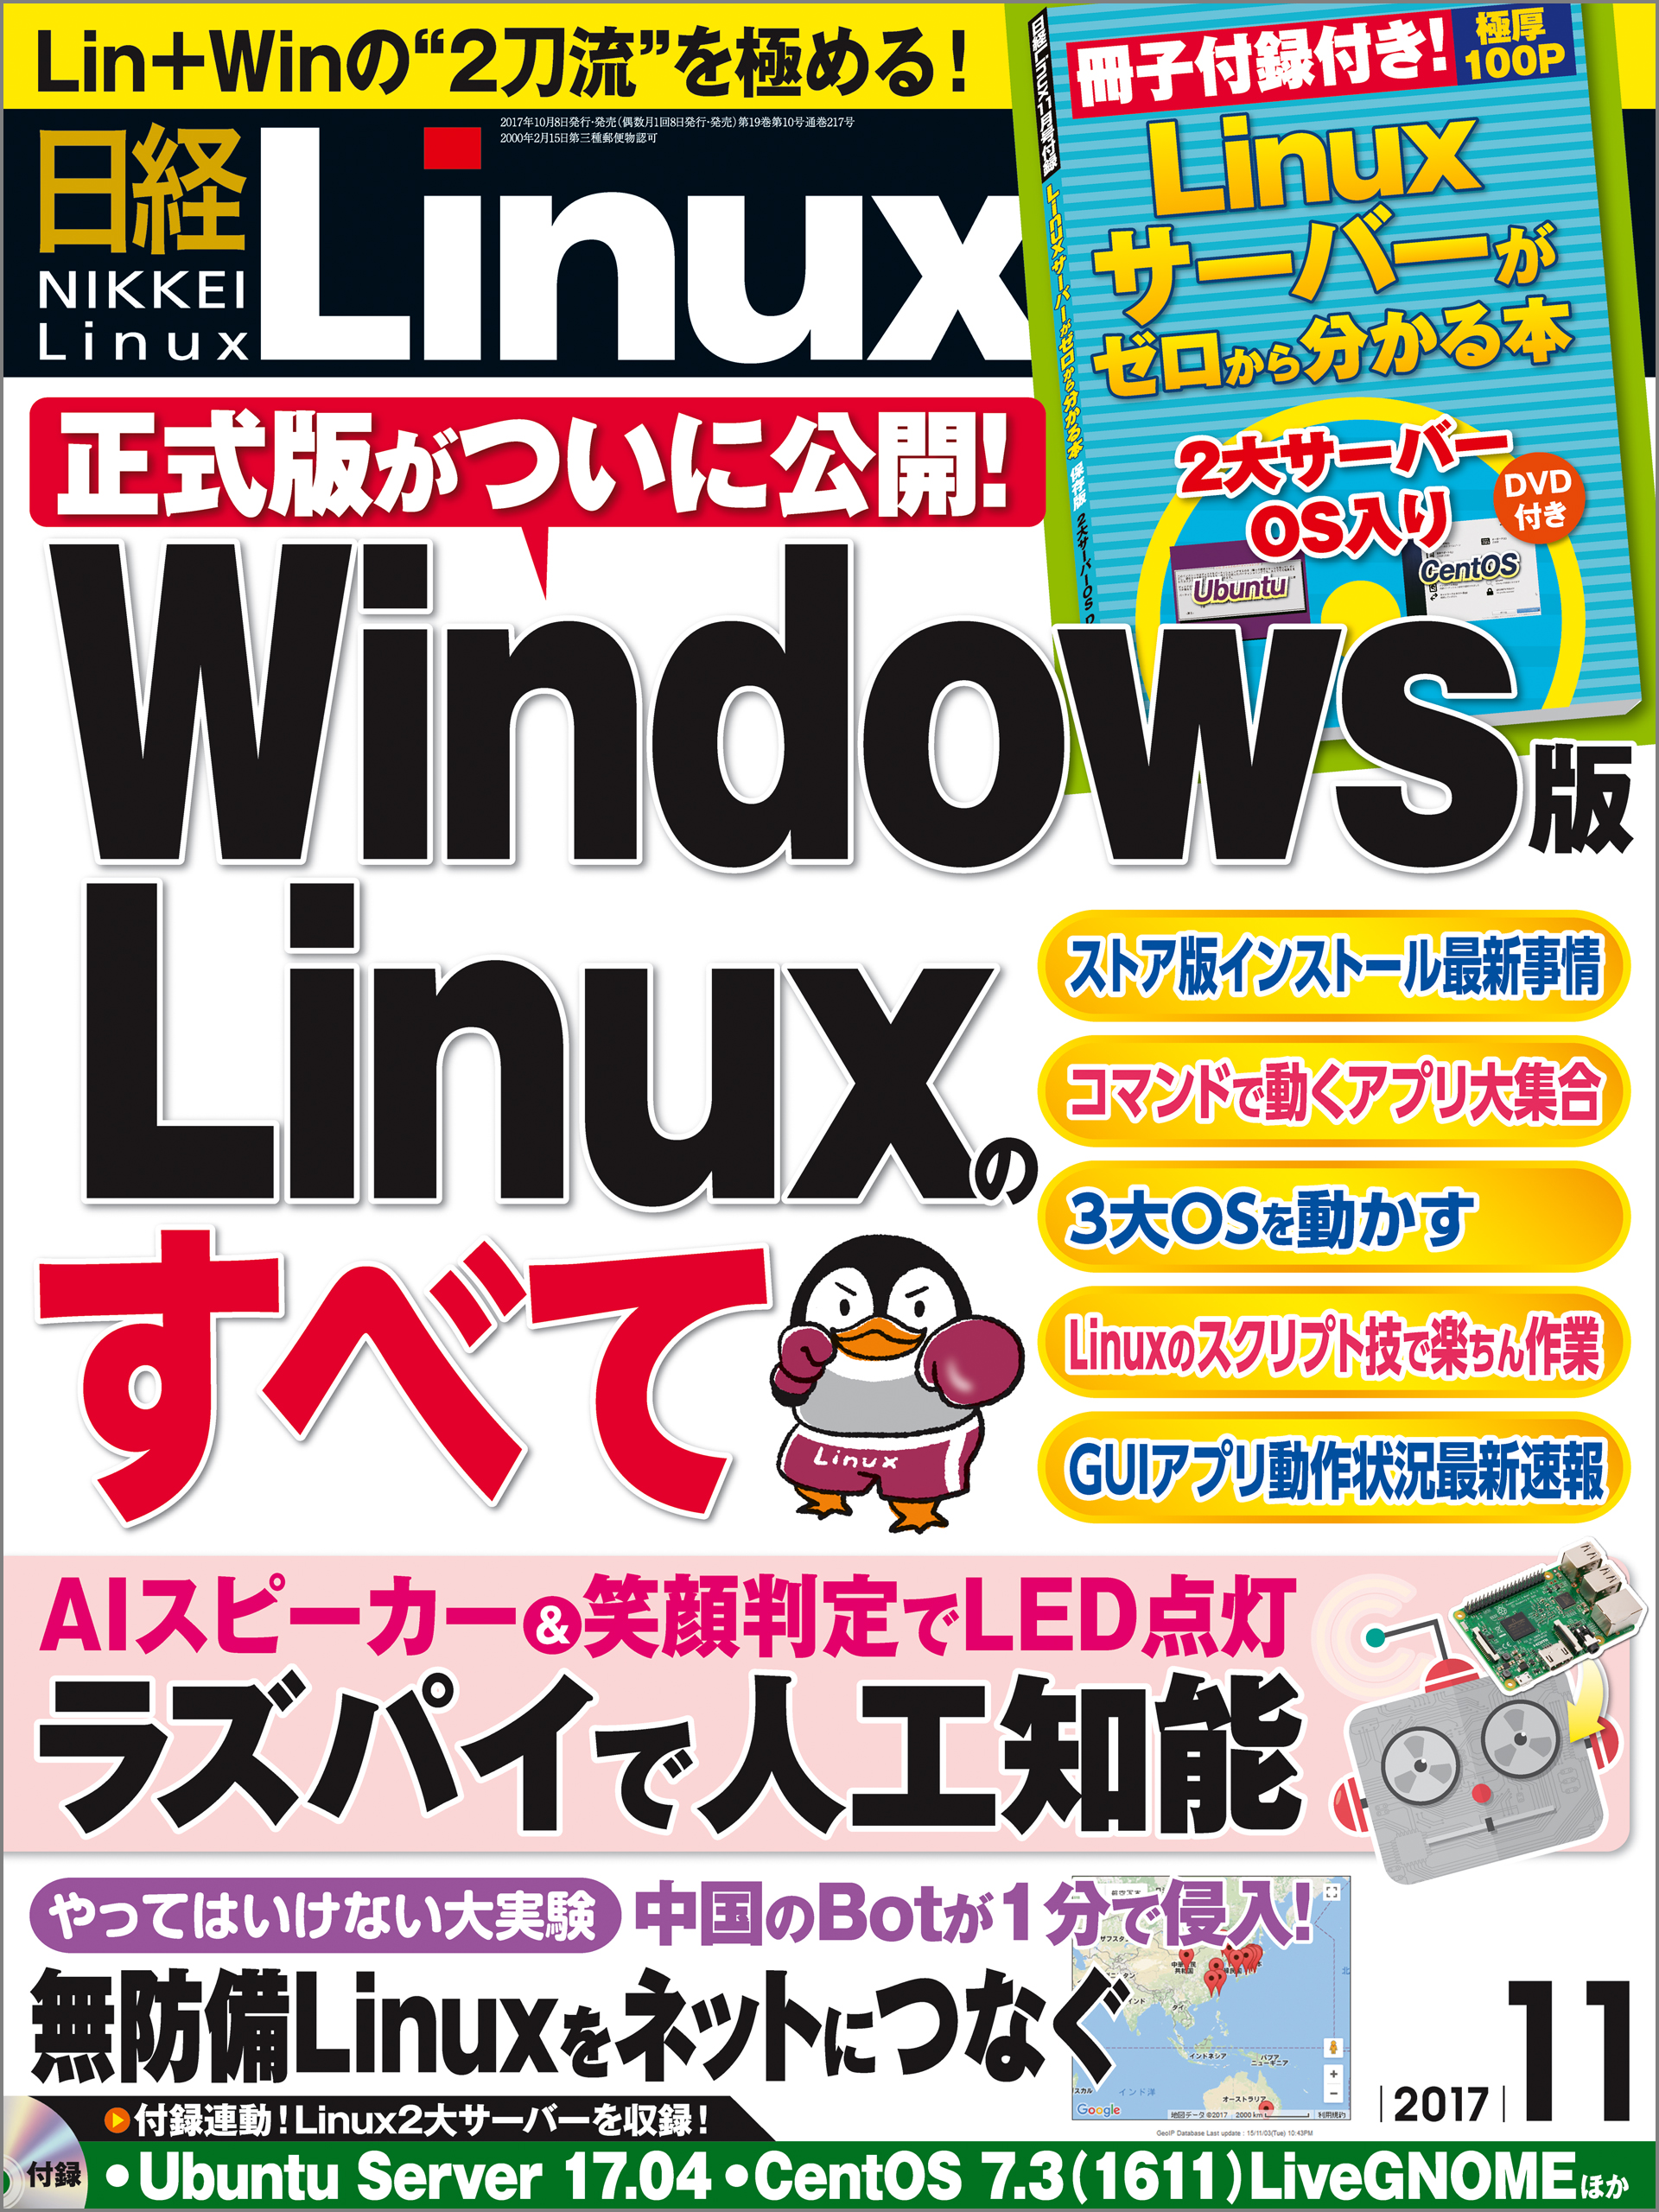 最新のデザイン 日経linux 2016年10月DVD付き www.rgd.com.co